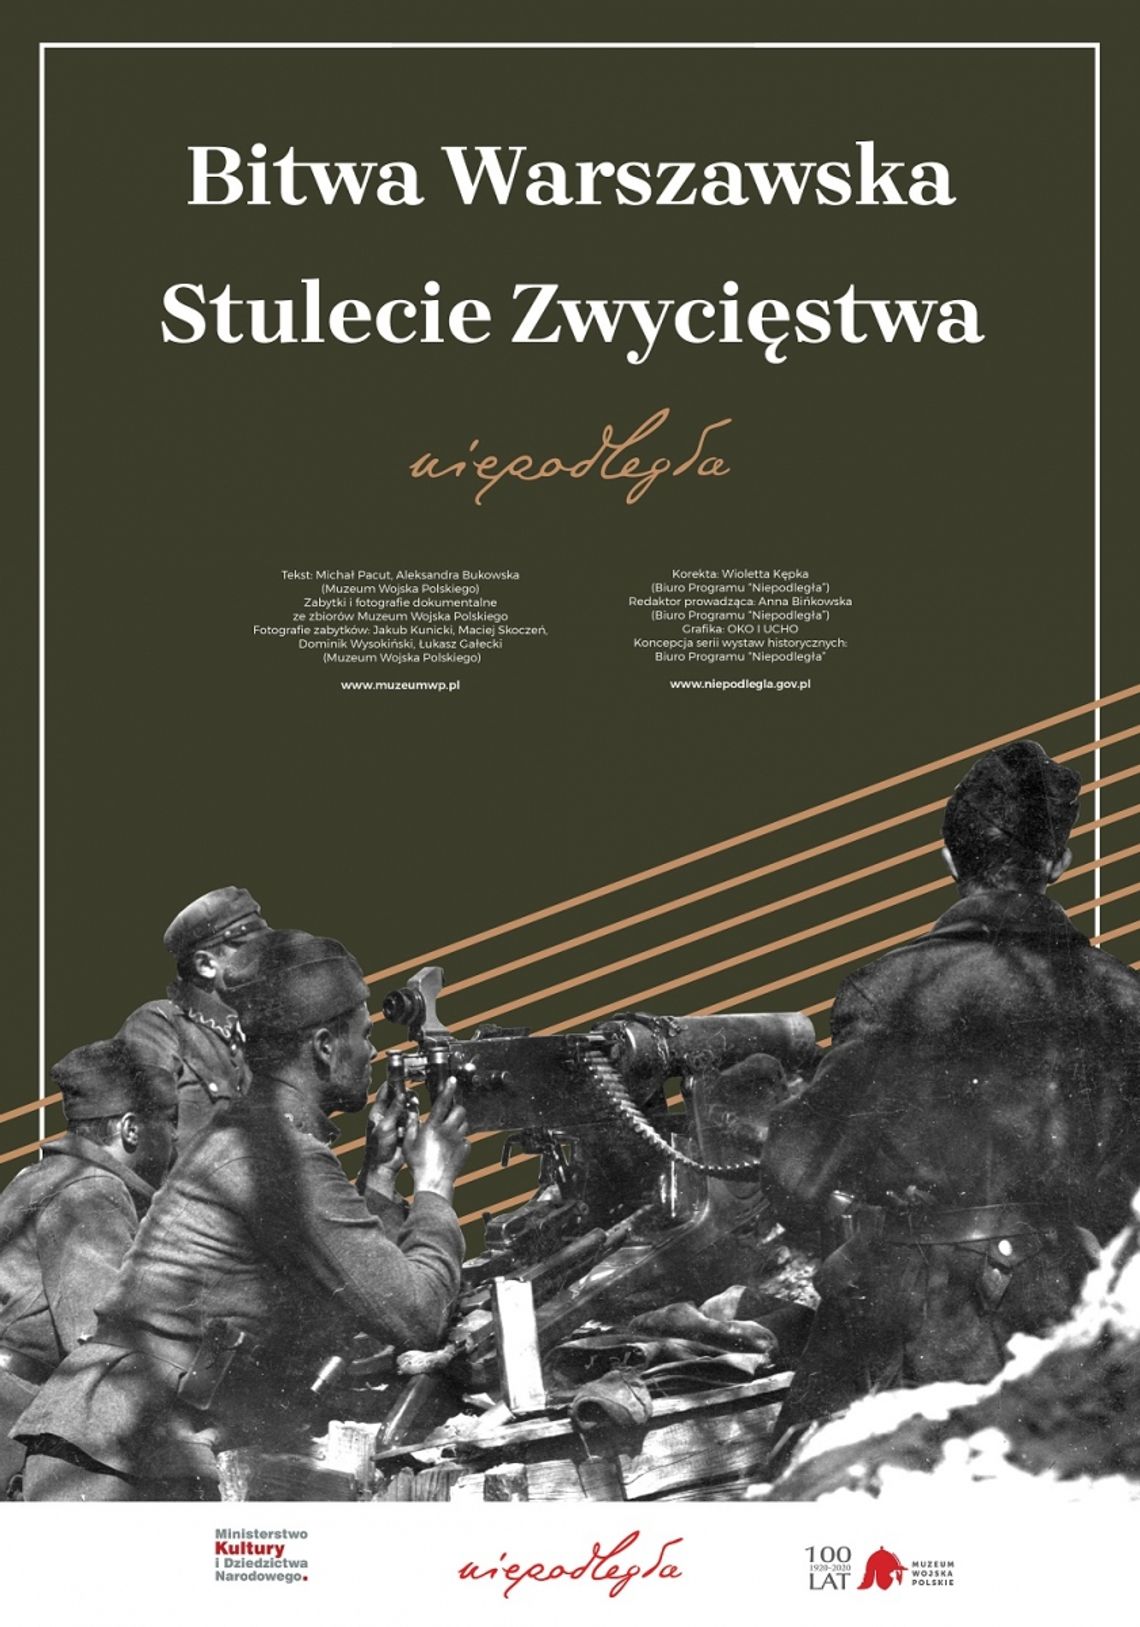 Bitwa Warszawska - wystawa